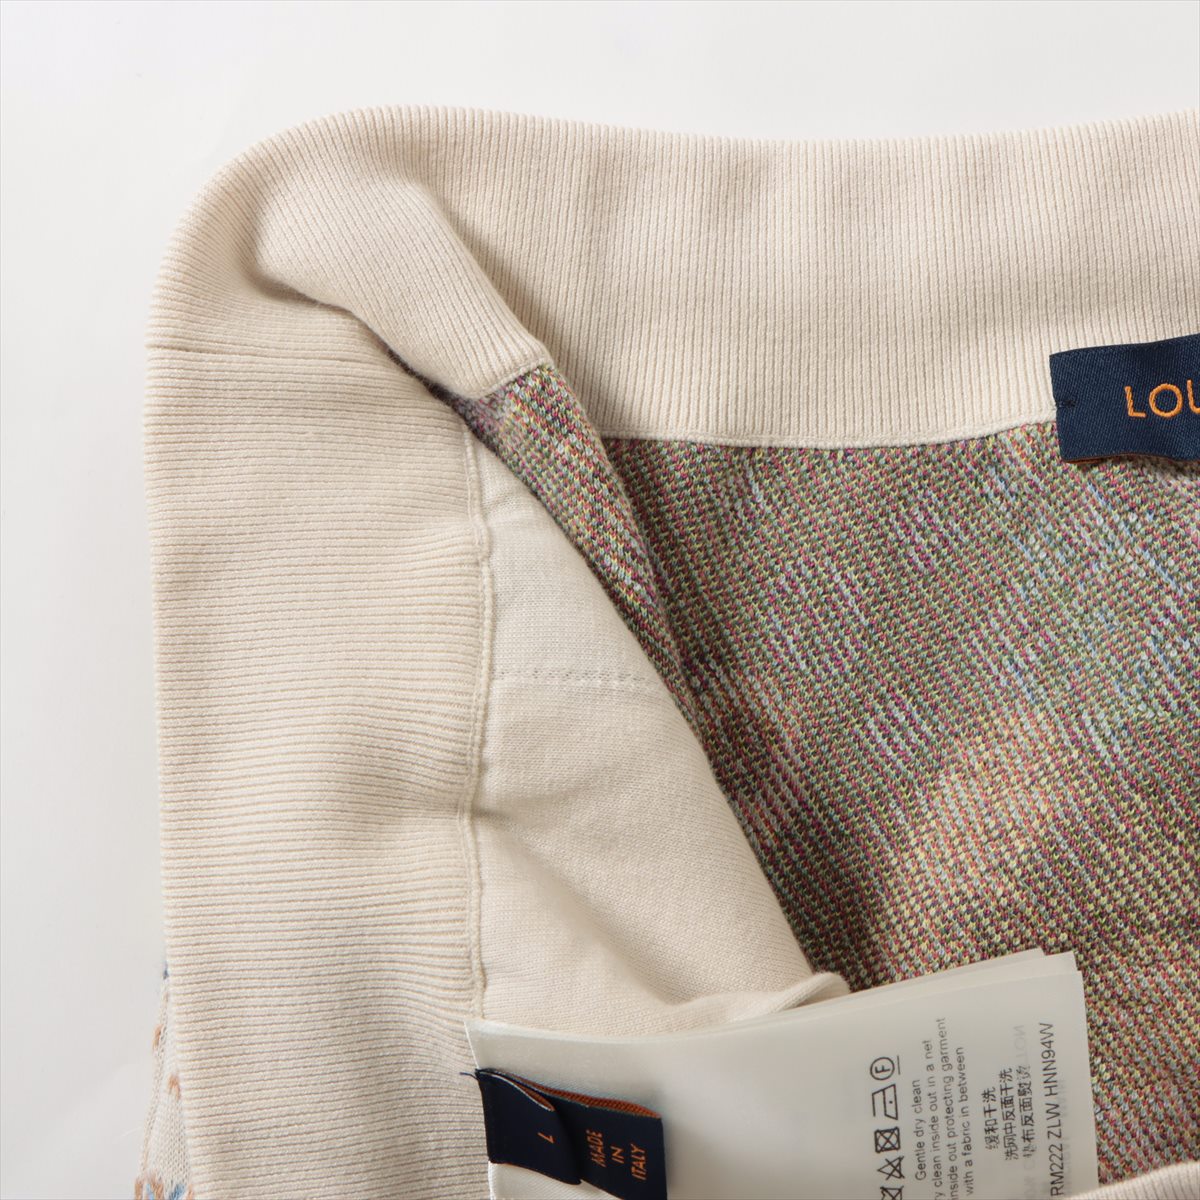 Louis Vuitton 22AW Cotton Short pants L Men's Multicolor  floral jacquard knit shorts RM222